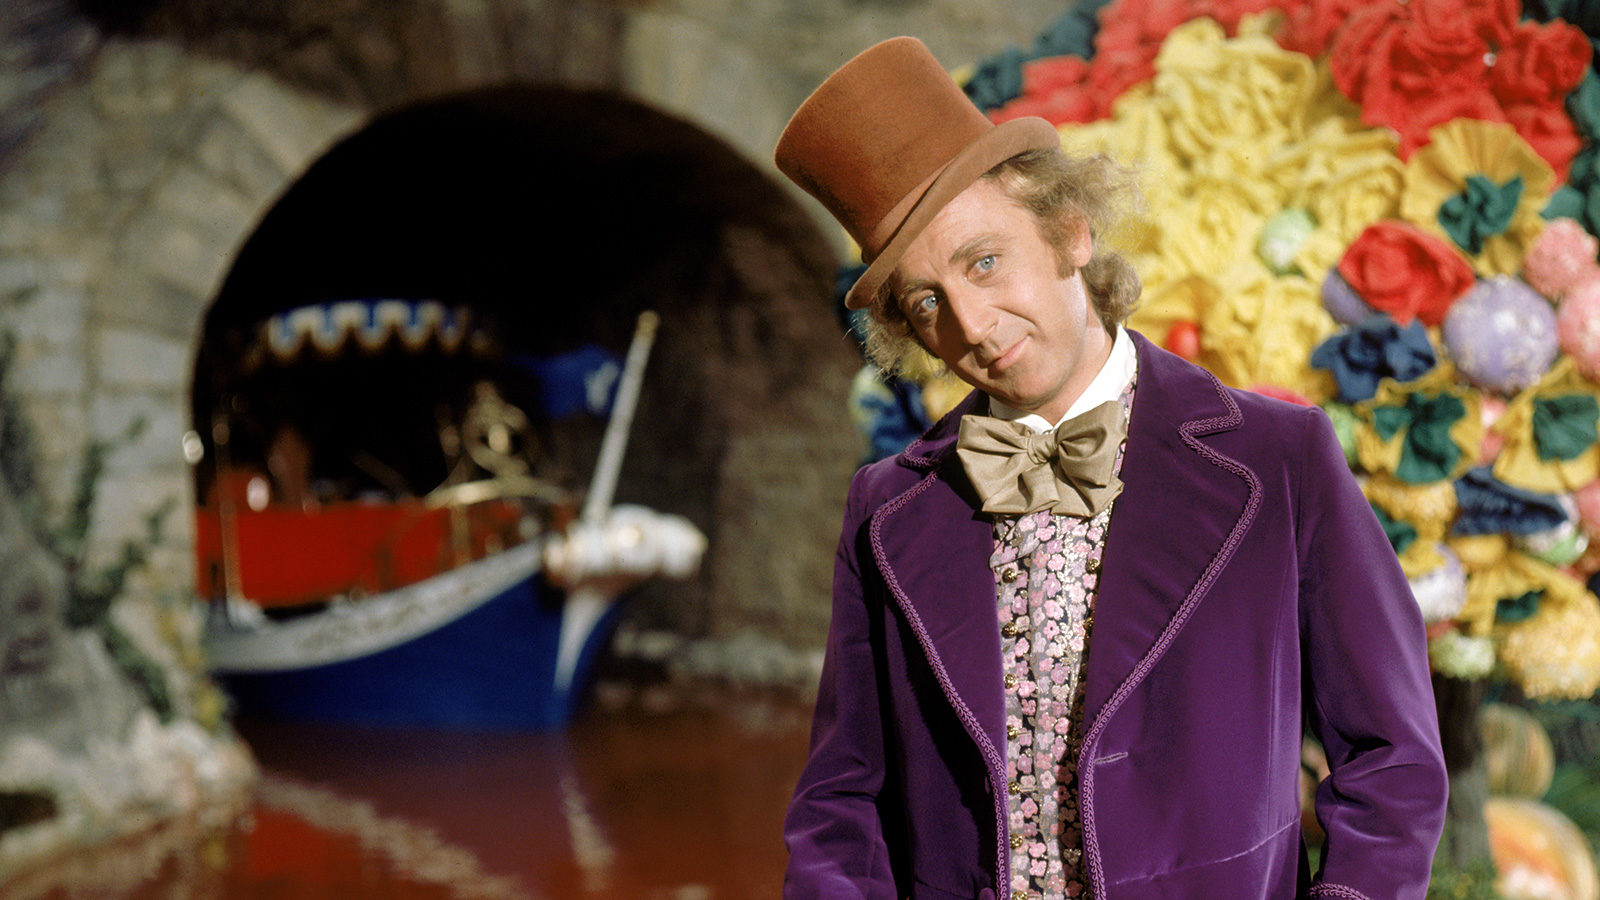 Willy Wonka i la fàbrica de xocolata